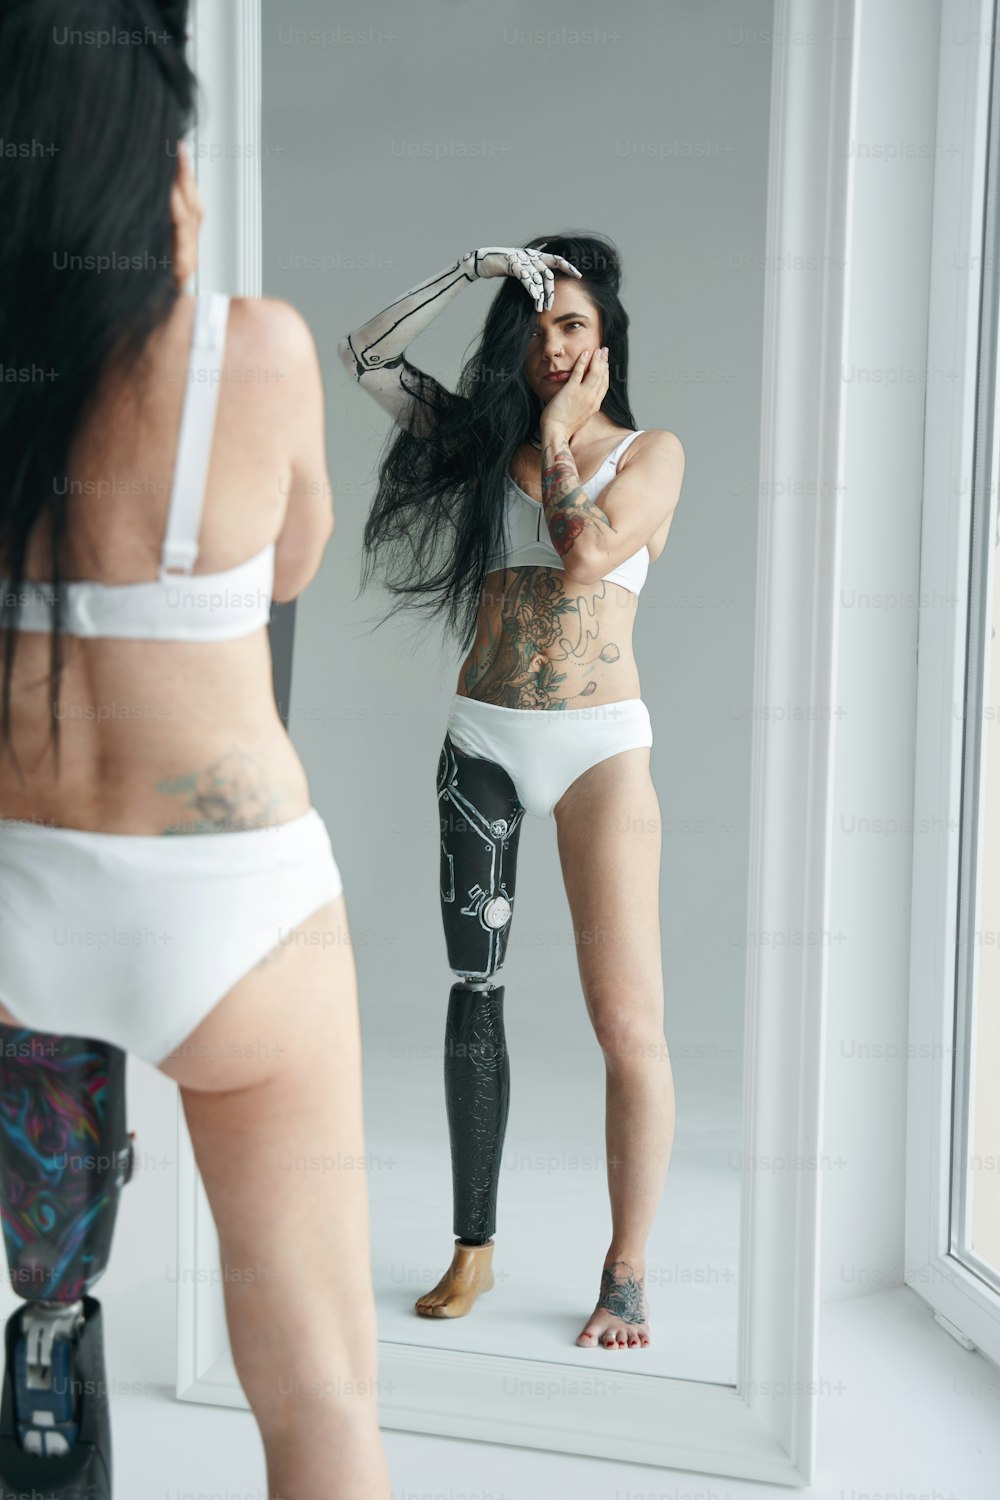 Mujer morena con apariencia inusual y arte corporal droide futurista. Chica parada frente al espejo y mirando su reflejo. Fotografía de estudio